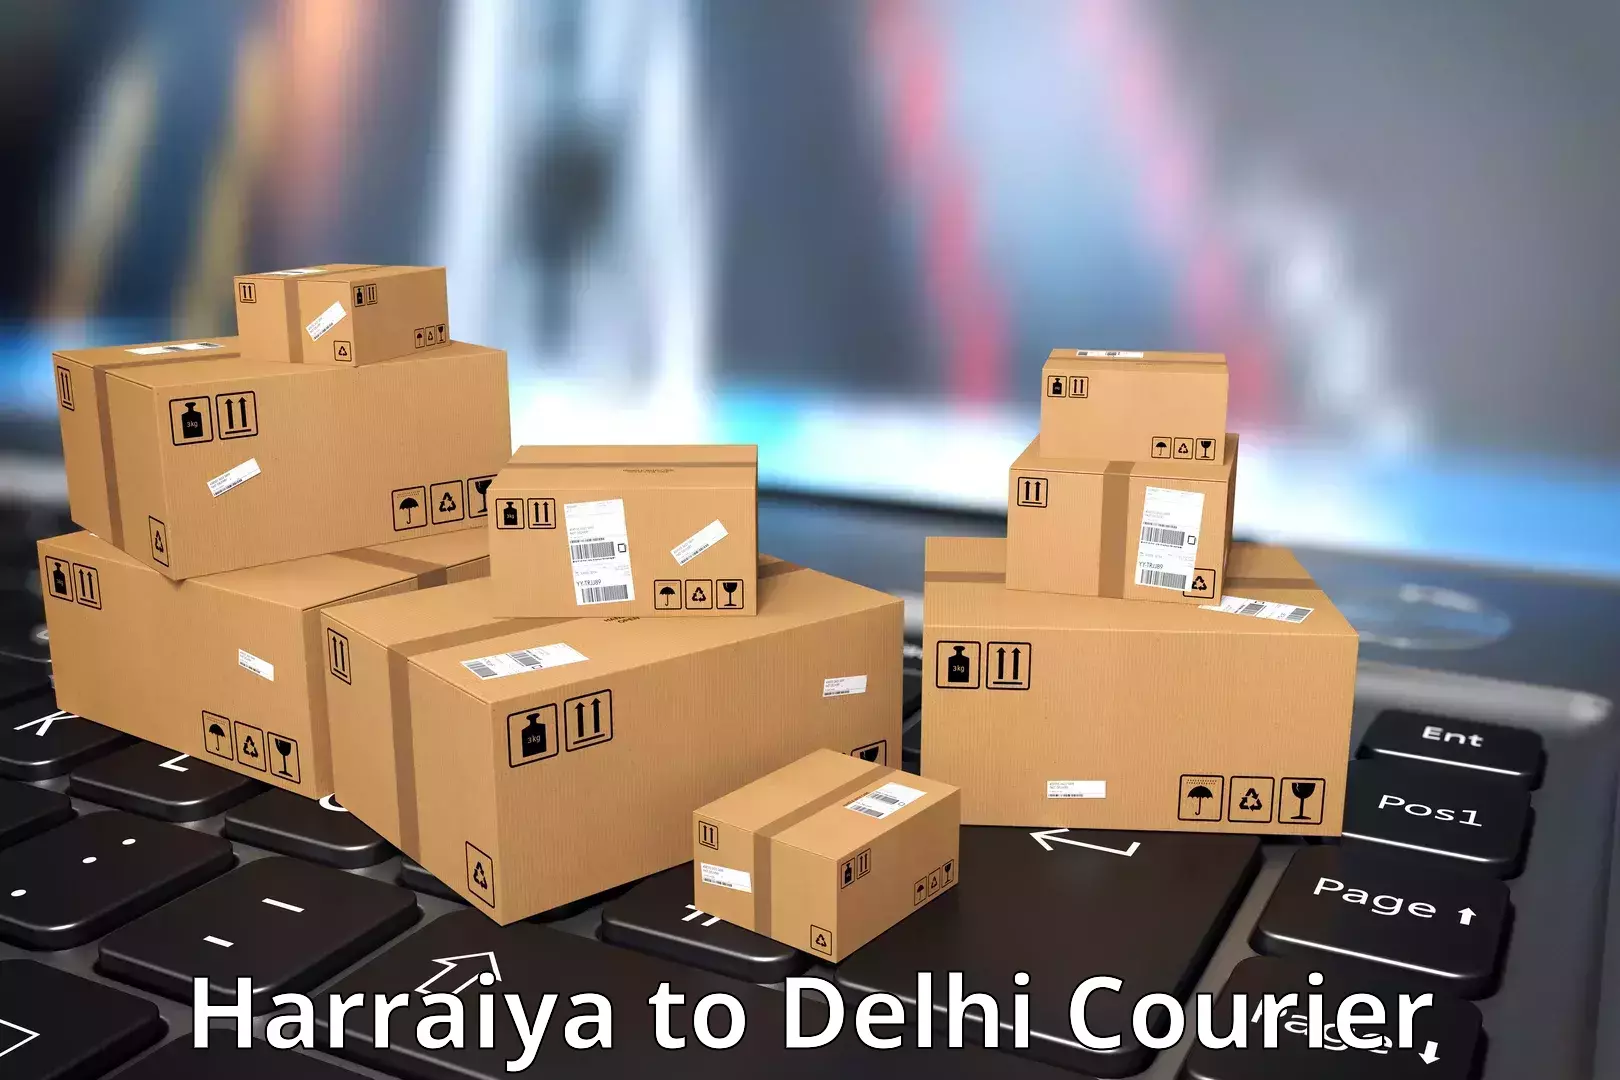 Efficient cargo services Harraiya to Delhi